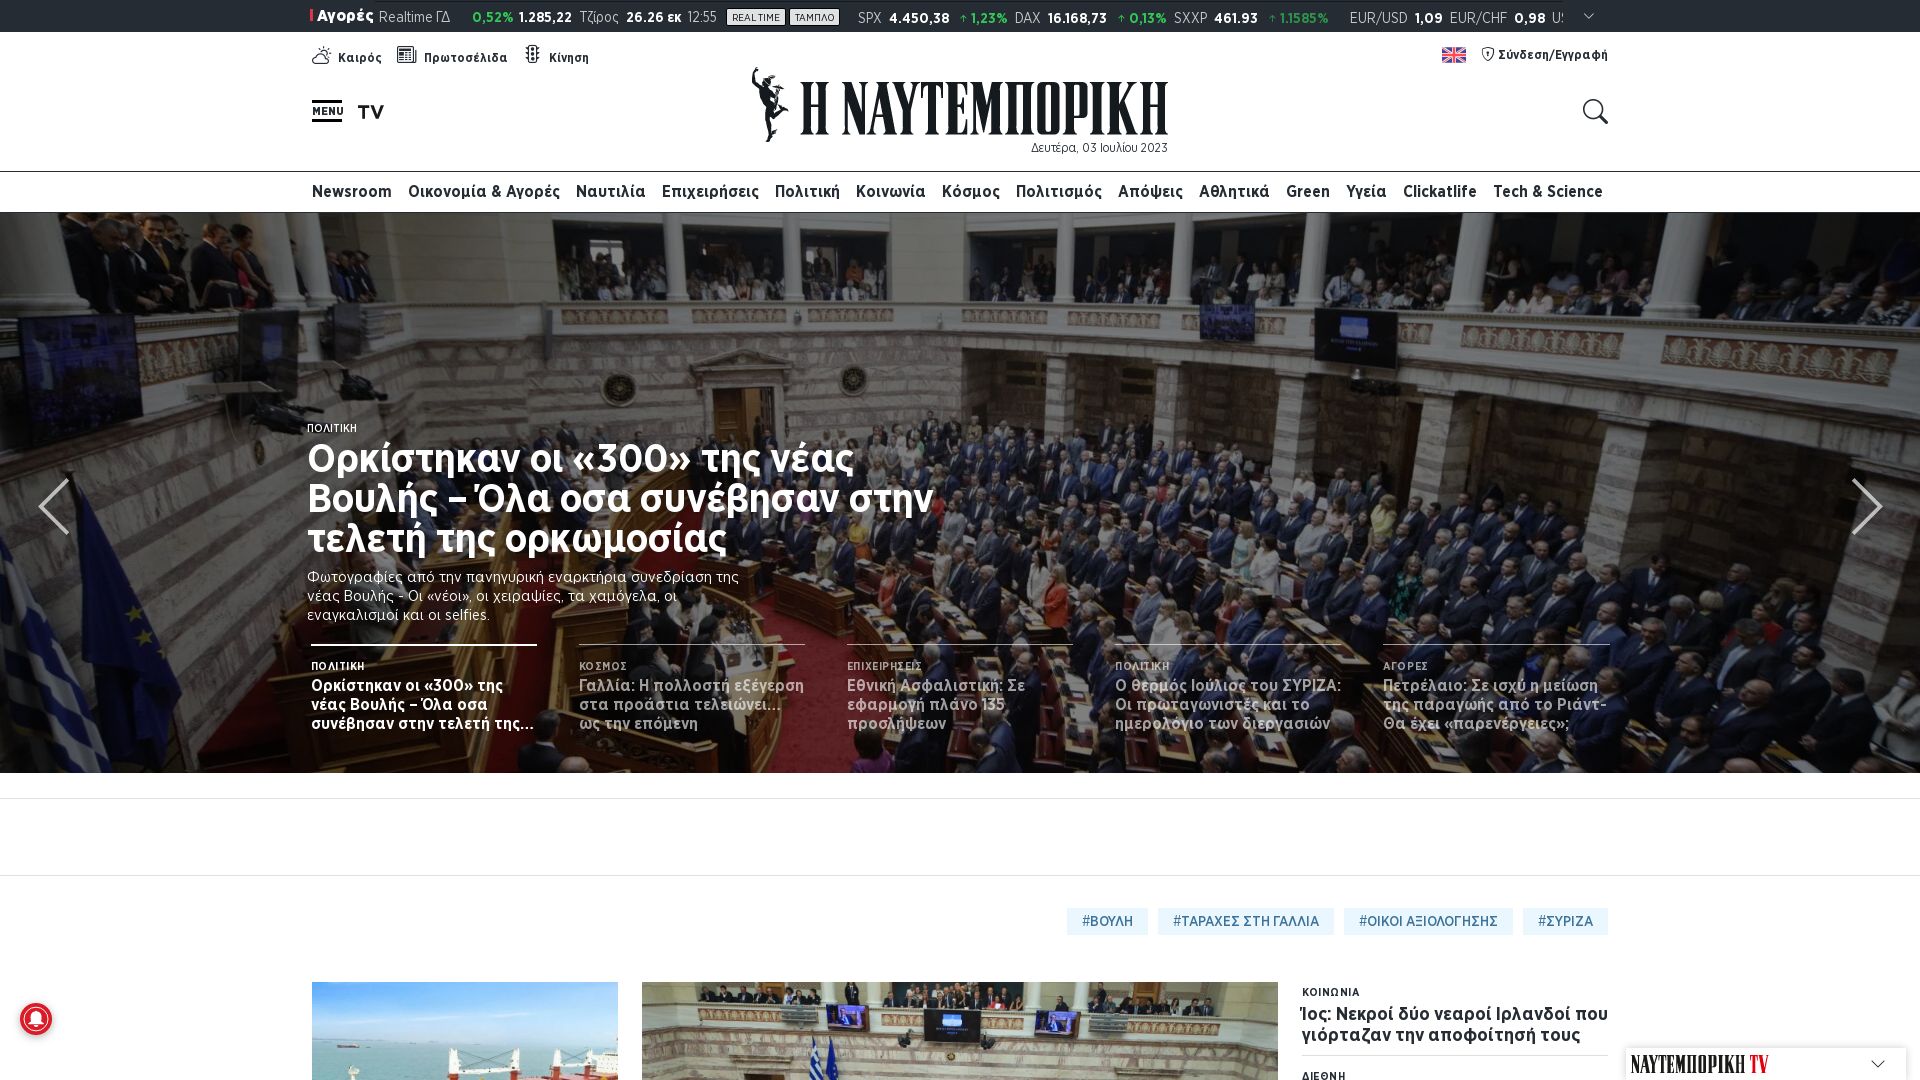 État du site web naftemporiki.gr est   EN LIGNE